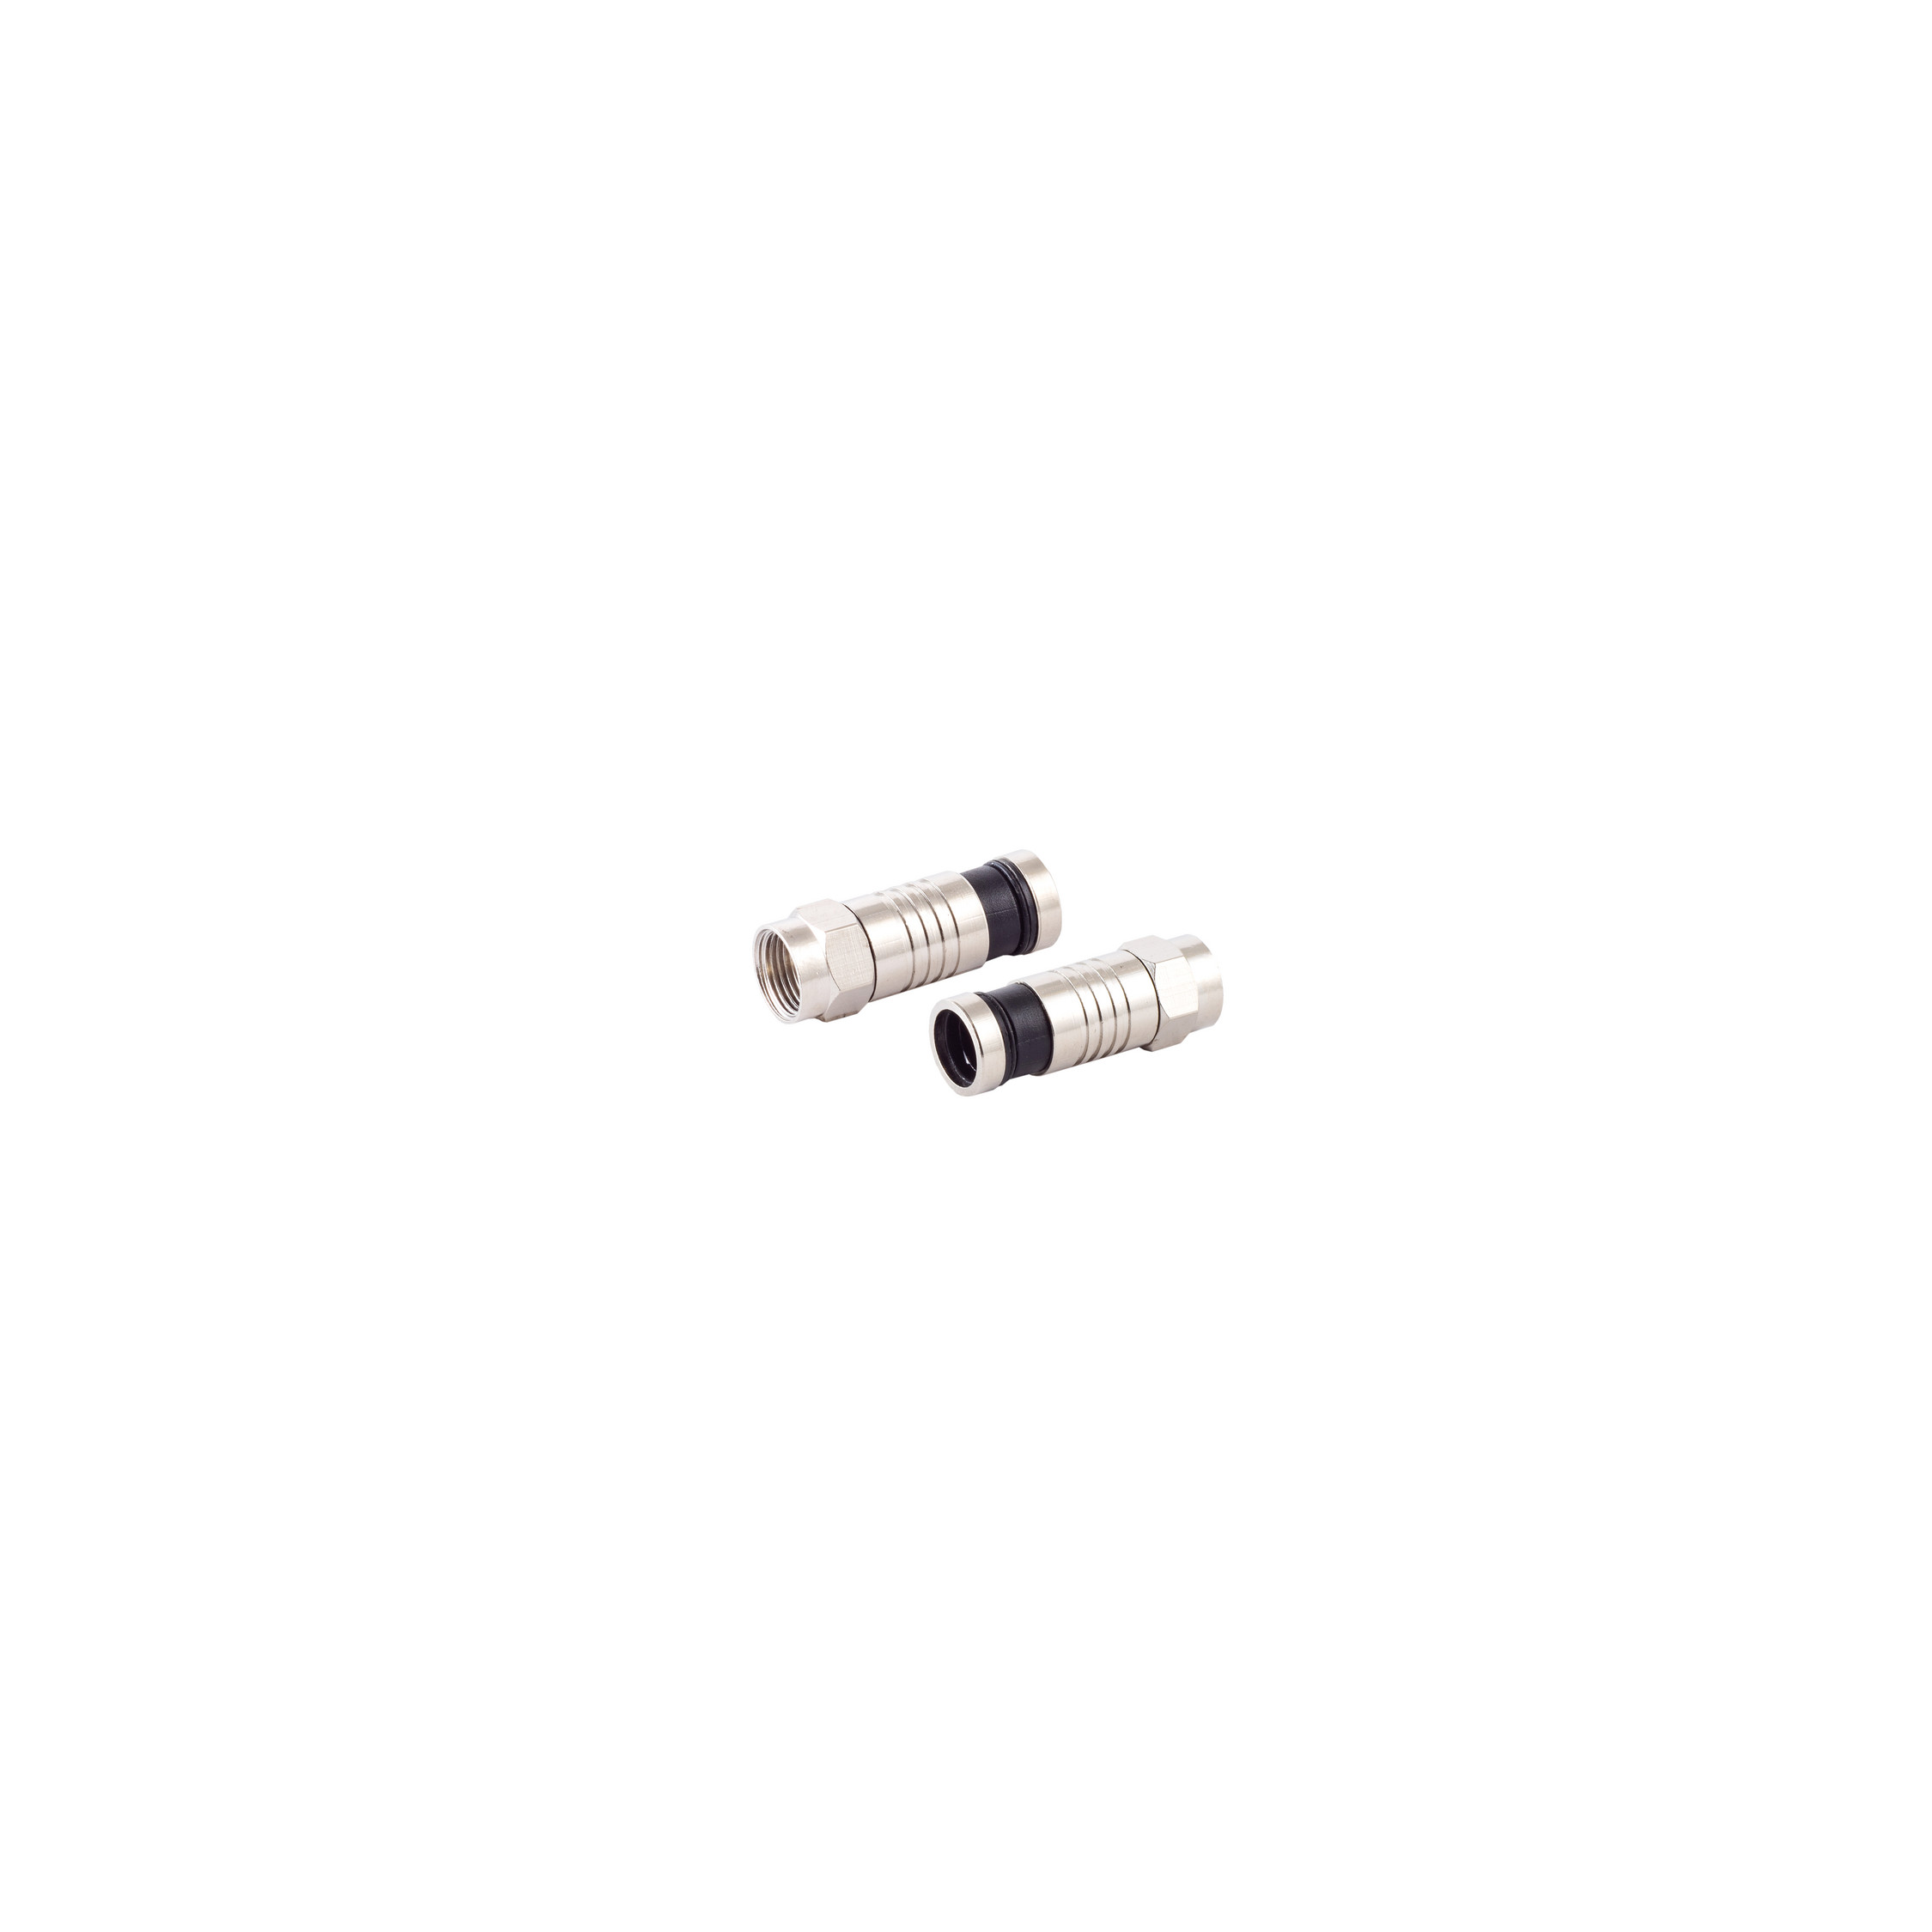 S/CONN MAXIMUM CONNECTIVITY F-Kompressionsstecker für & 7,2mm SAT Kabel Adapter Stecker